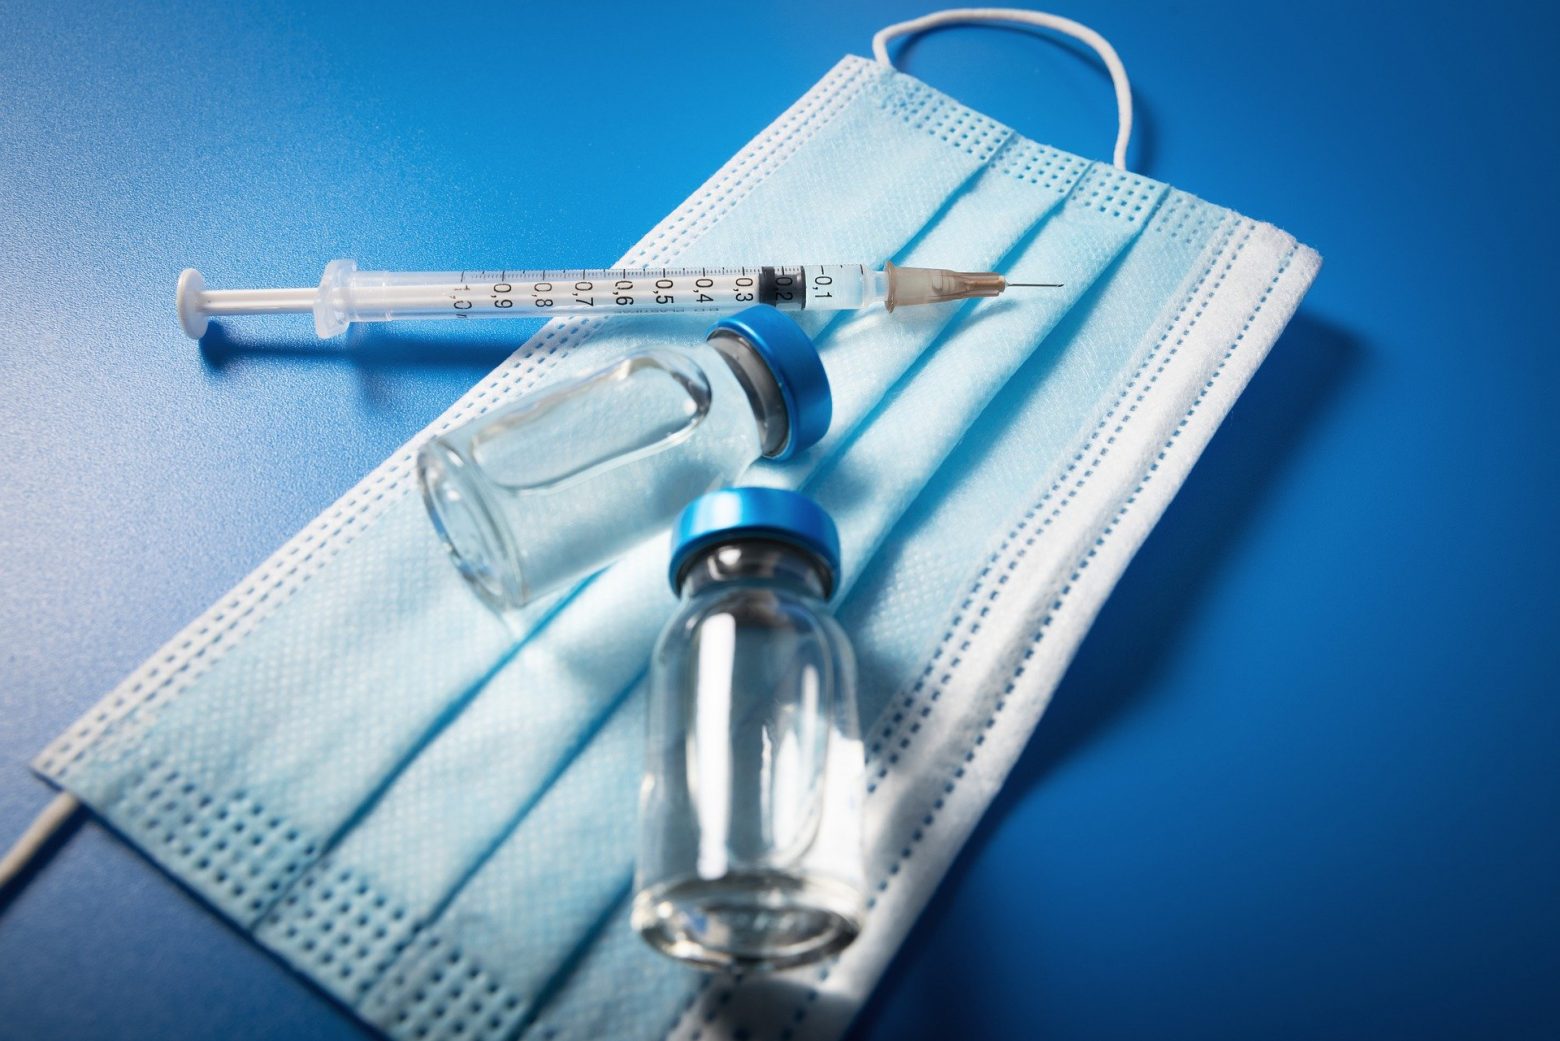 Εμβολιασμός και για γρίπη, ταυτόχρονα με τον κοροναϊό - Πότε ανοίγει η πλατφόρμα - Ποιοι προηγούνται